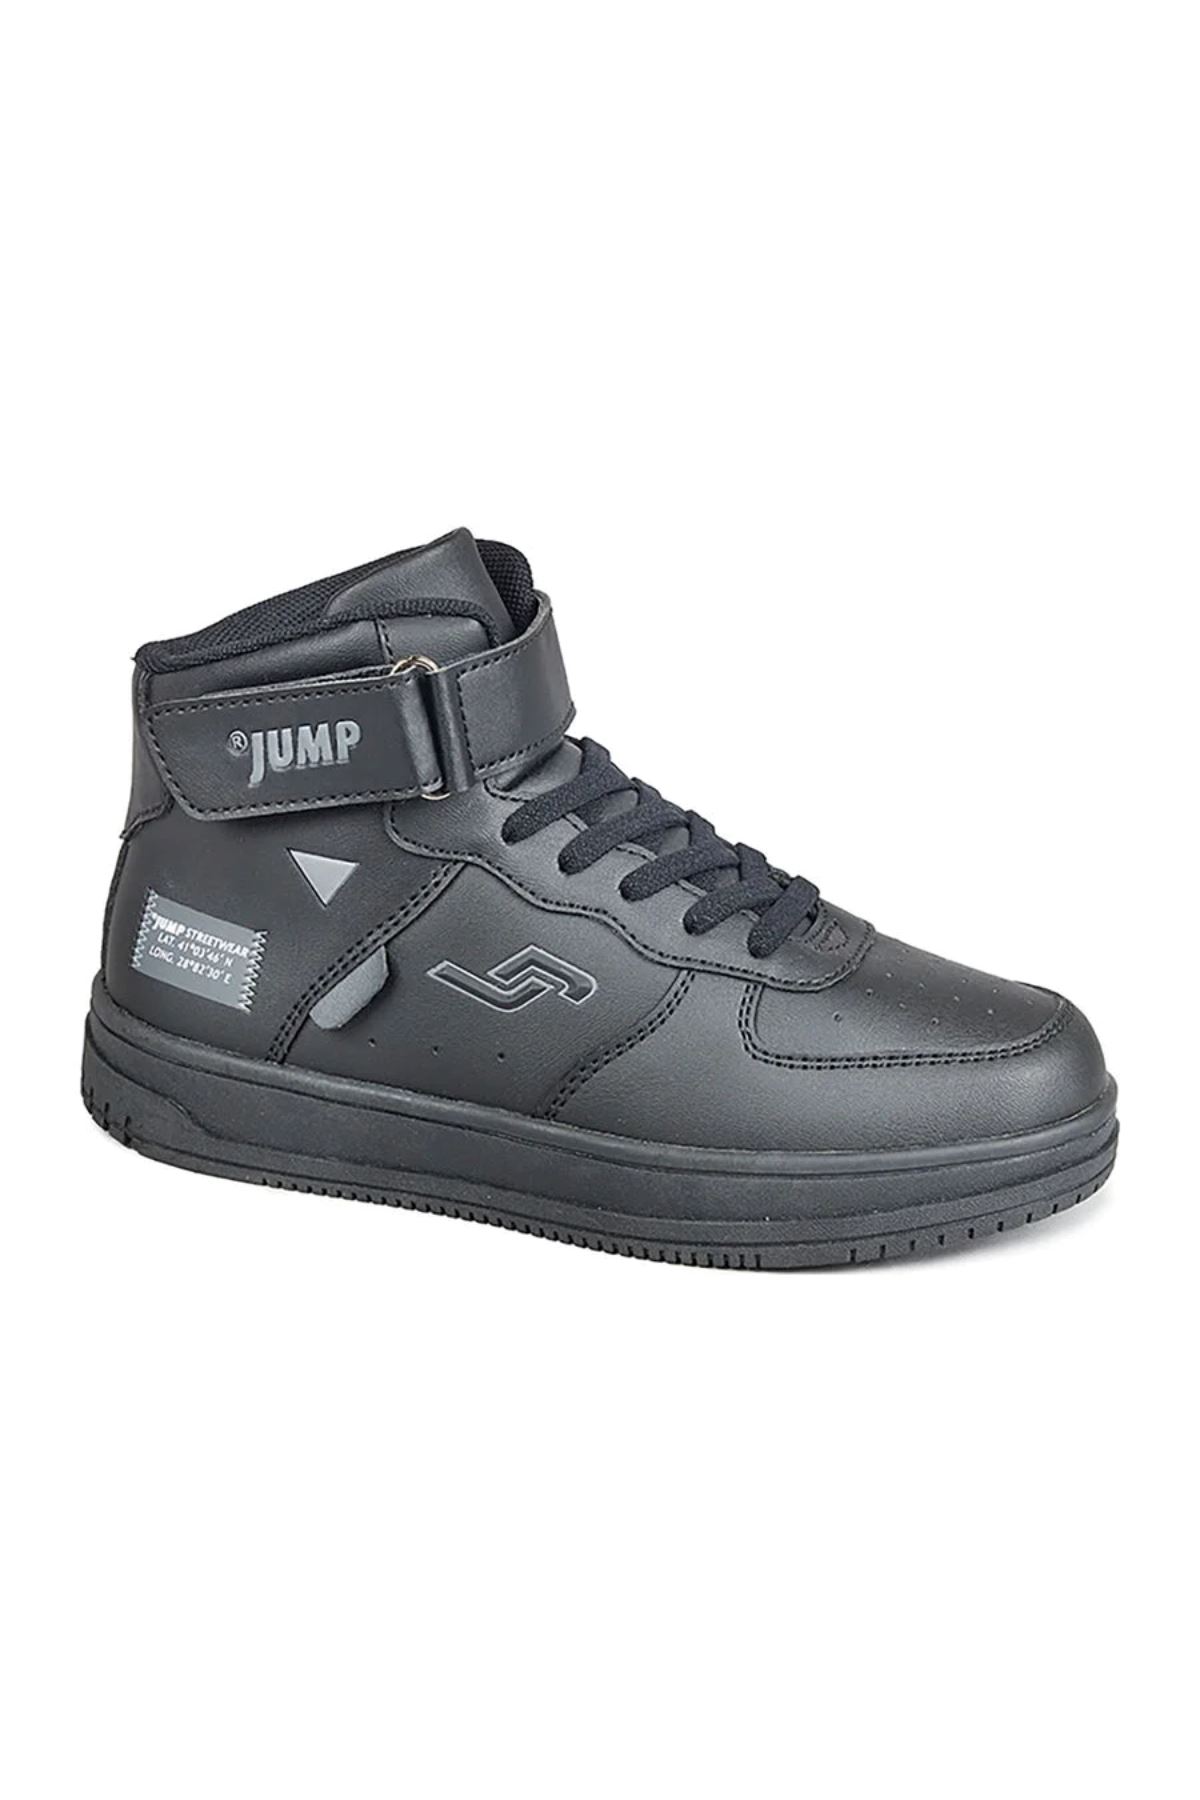 Jump Unisex Siyah Günlük Ayakkabı - 27834F